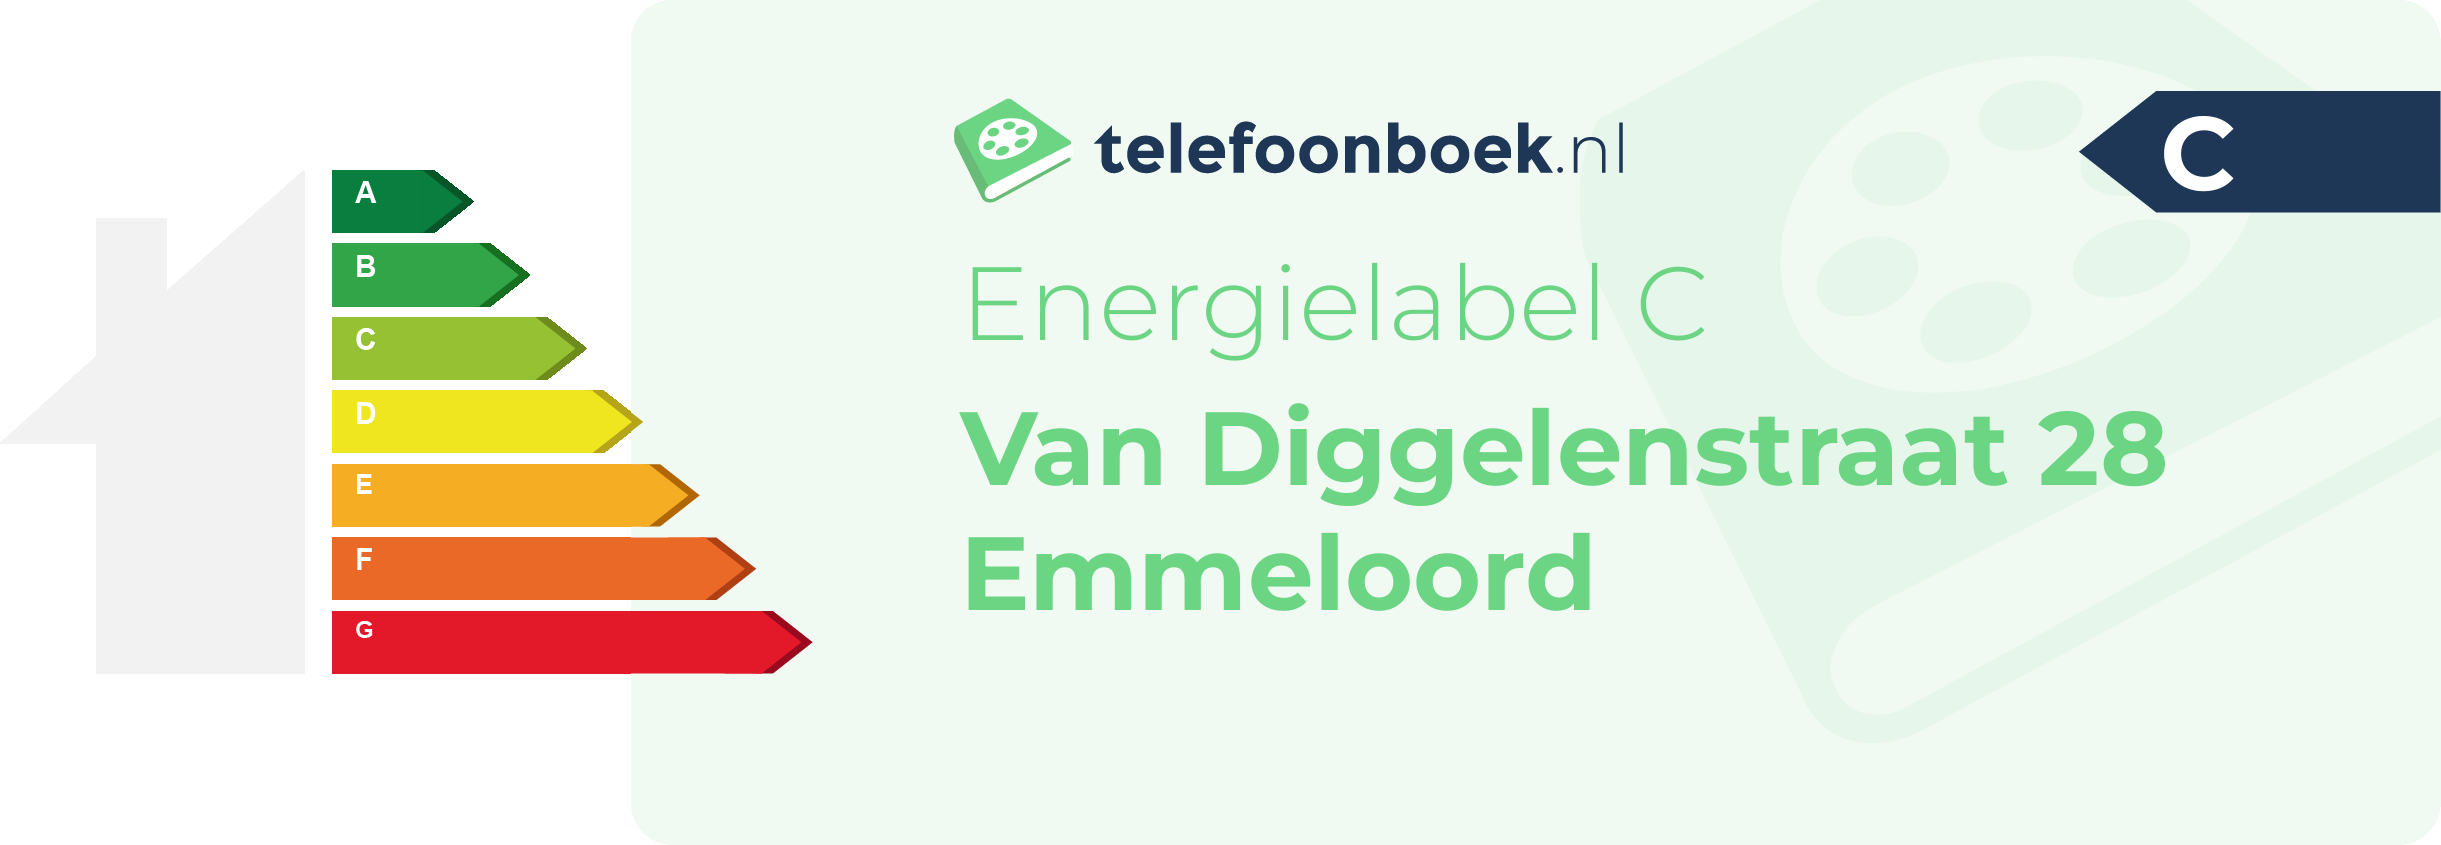 Energielabel Van Diggelenstraat 28 Emmeloord